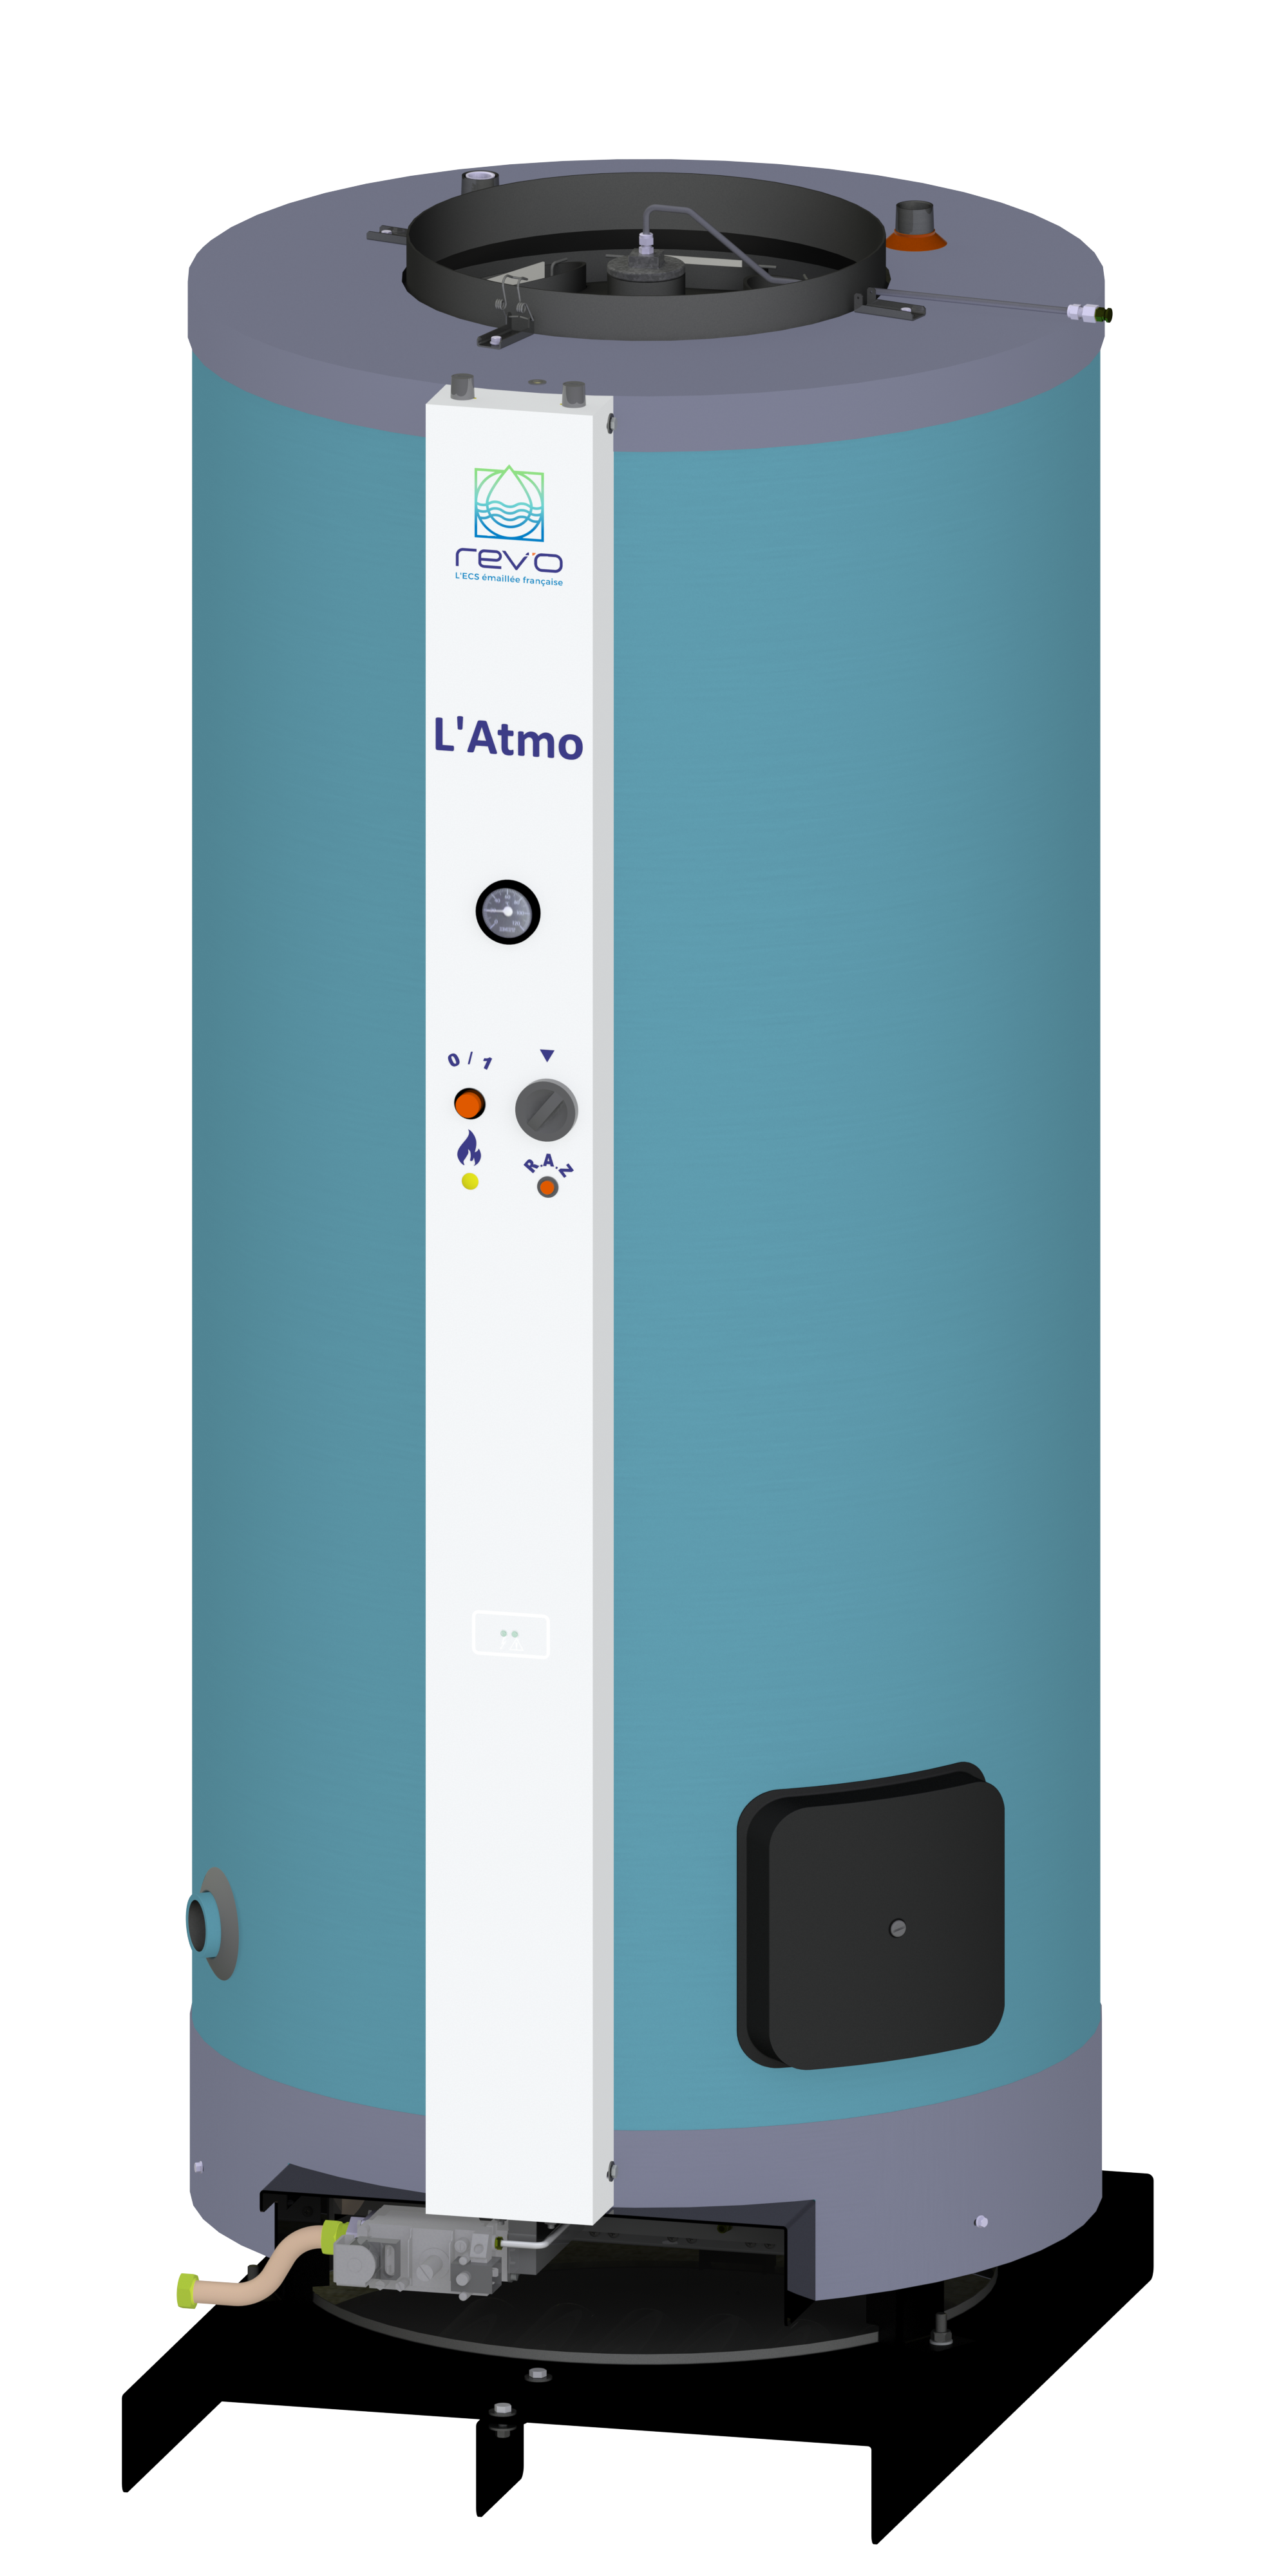 Rev'o - L'Atmo' - Accumulateur ECS gaz atmosphérique